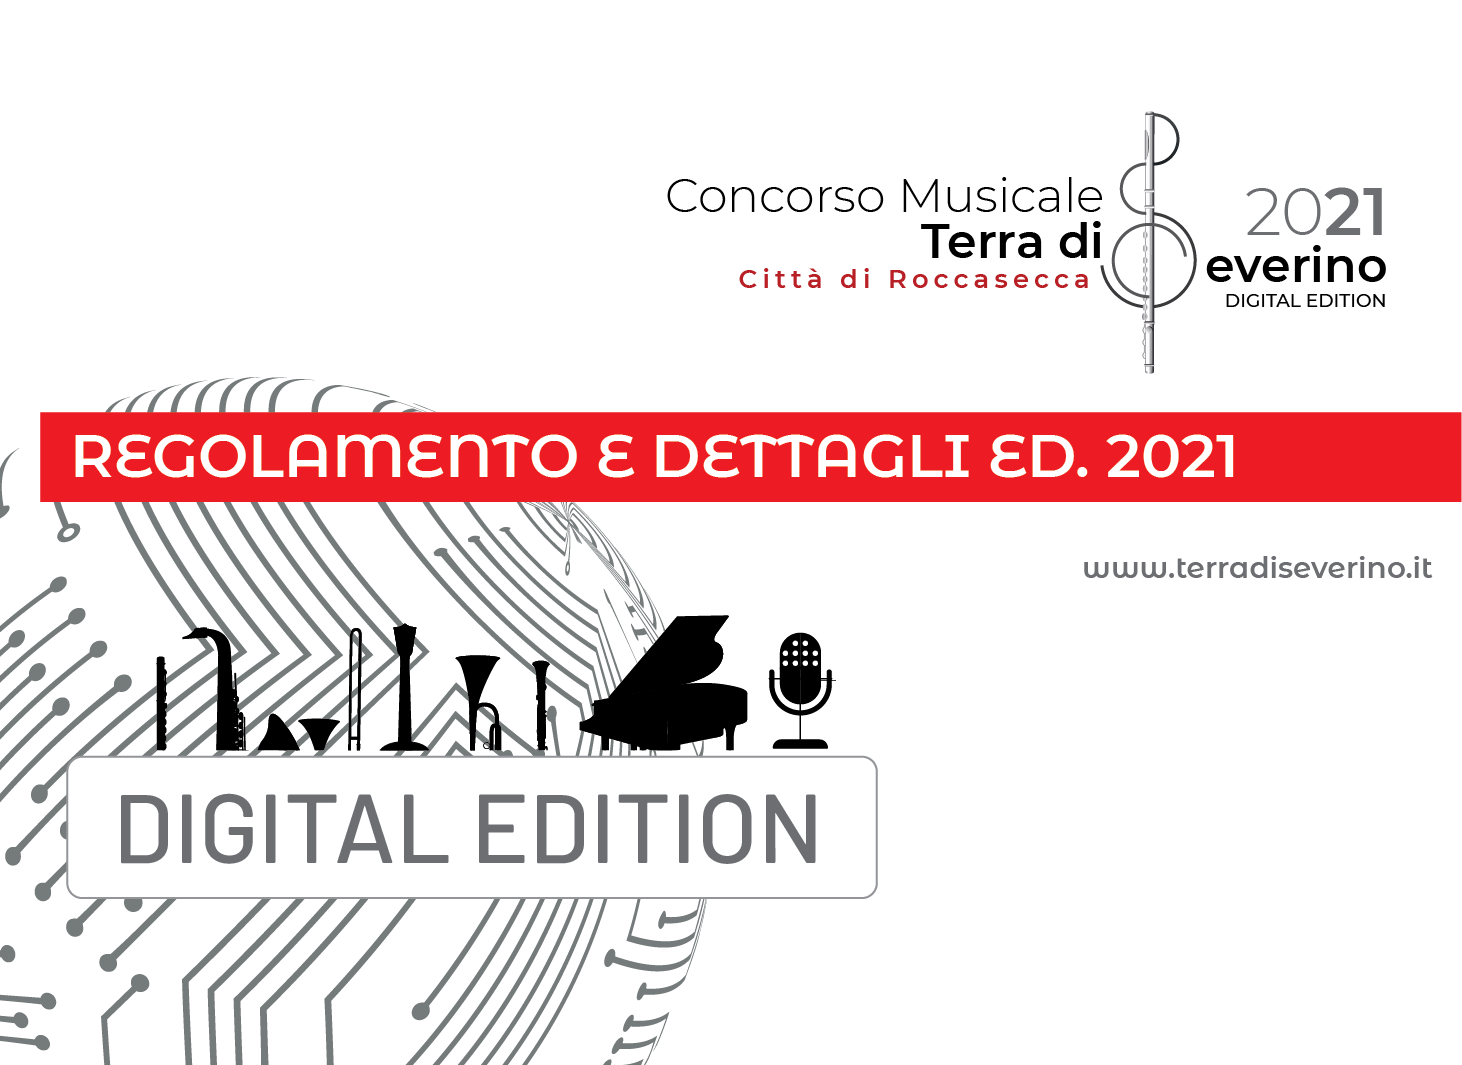 Edizione 2021 digital edition • Tutte le informazioni ed i moduli